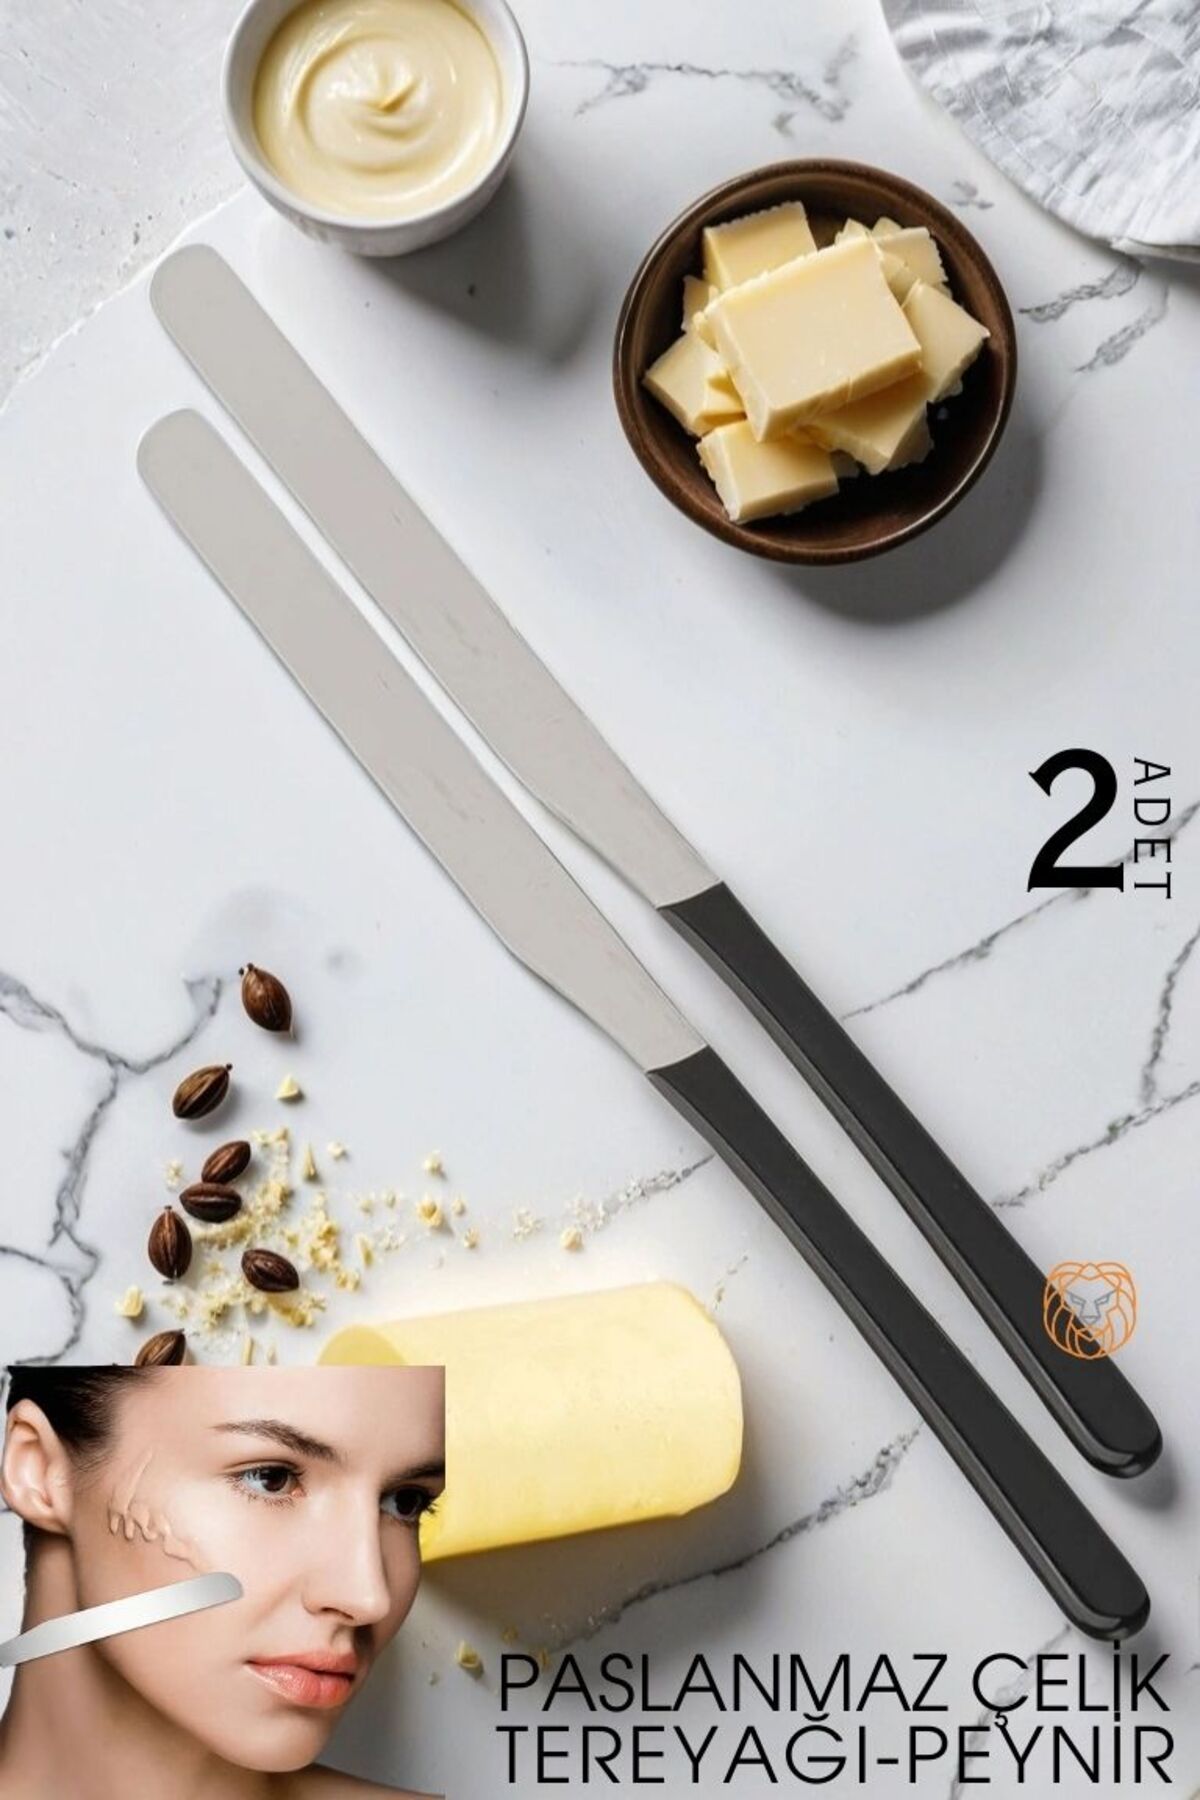 Transformacion Tereyağı Bıçağı Peynir Helva Paslanmaz Çelik 2 ADET